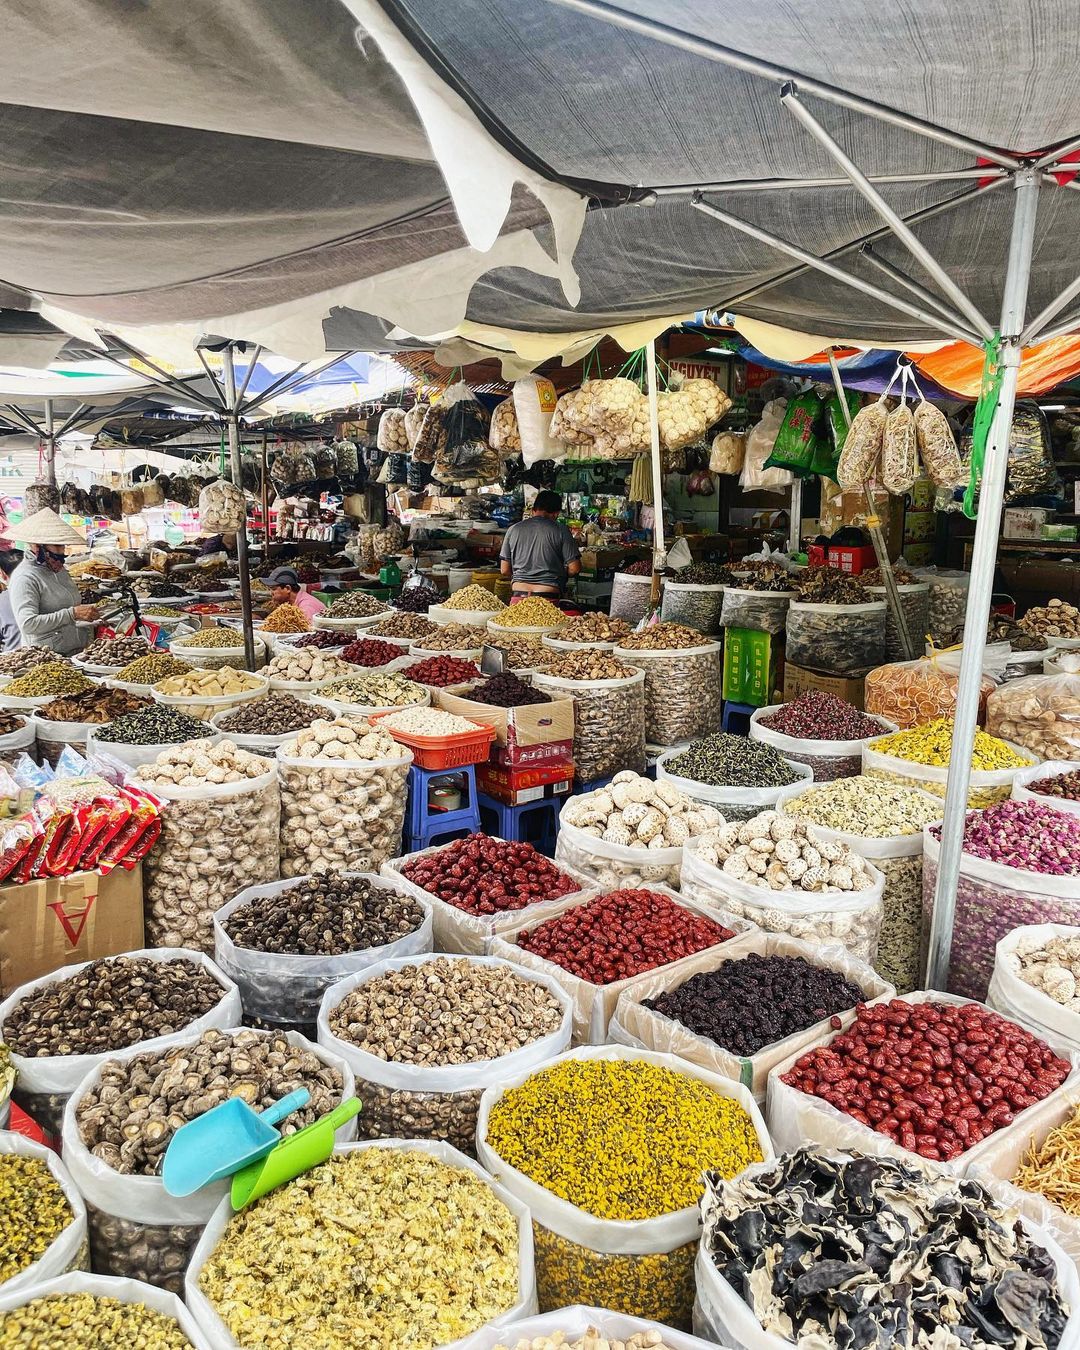 Vi vu chợ Bình Tây: ngôi chợ cổ lớn nhất Sài Thành 18